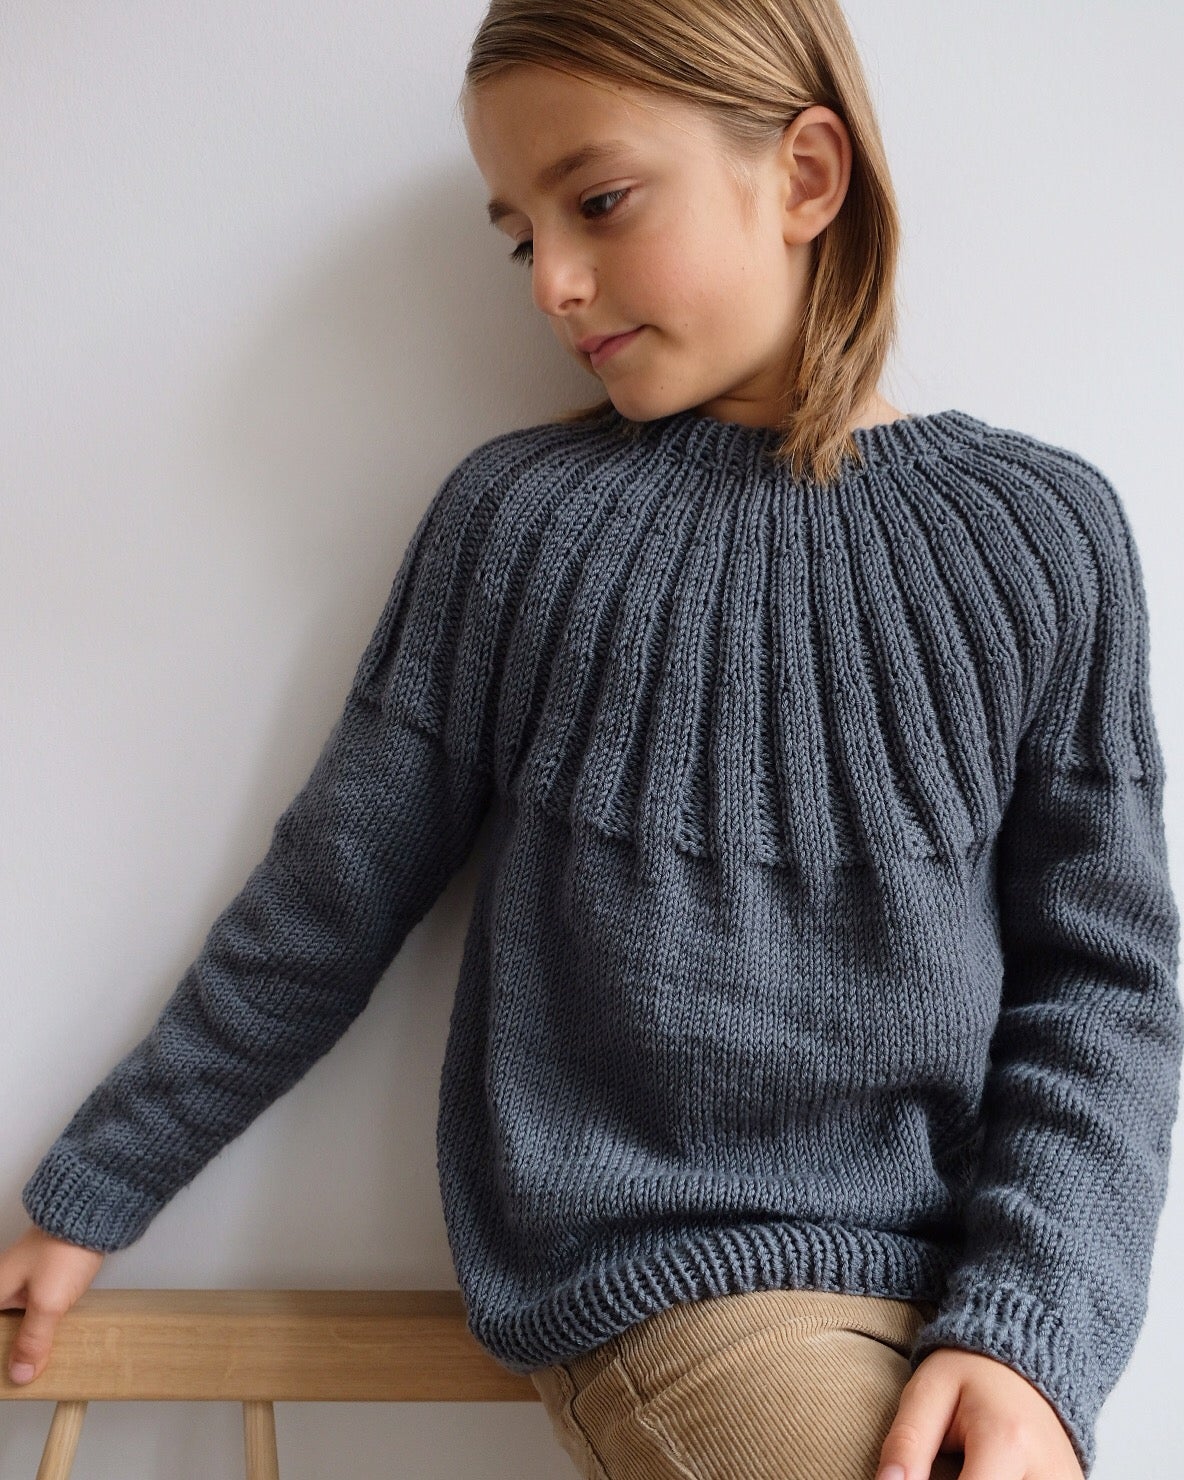 Haralds Sweater Junior har bærestykke med dobbelt rib